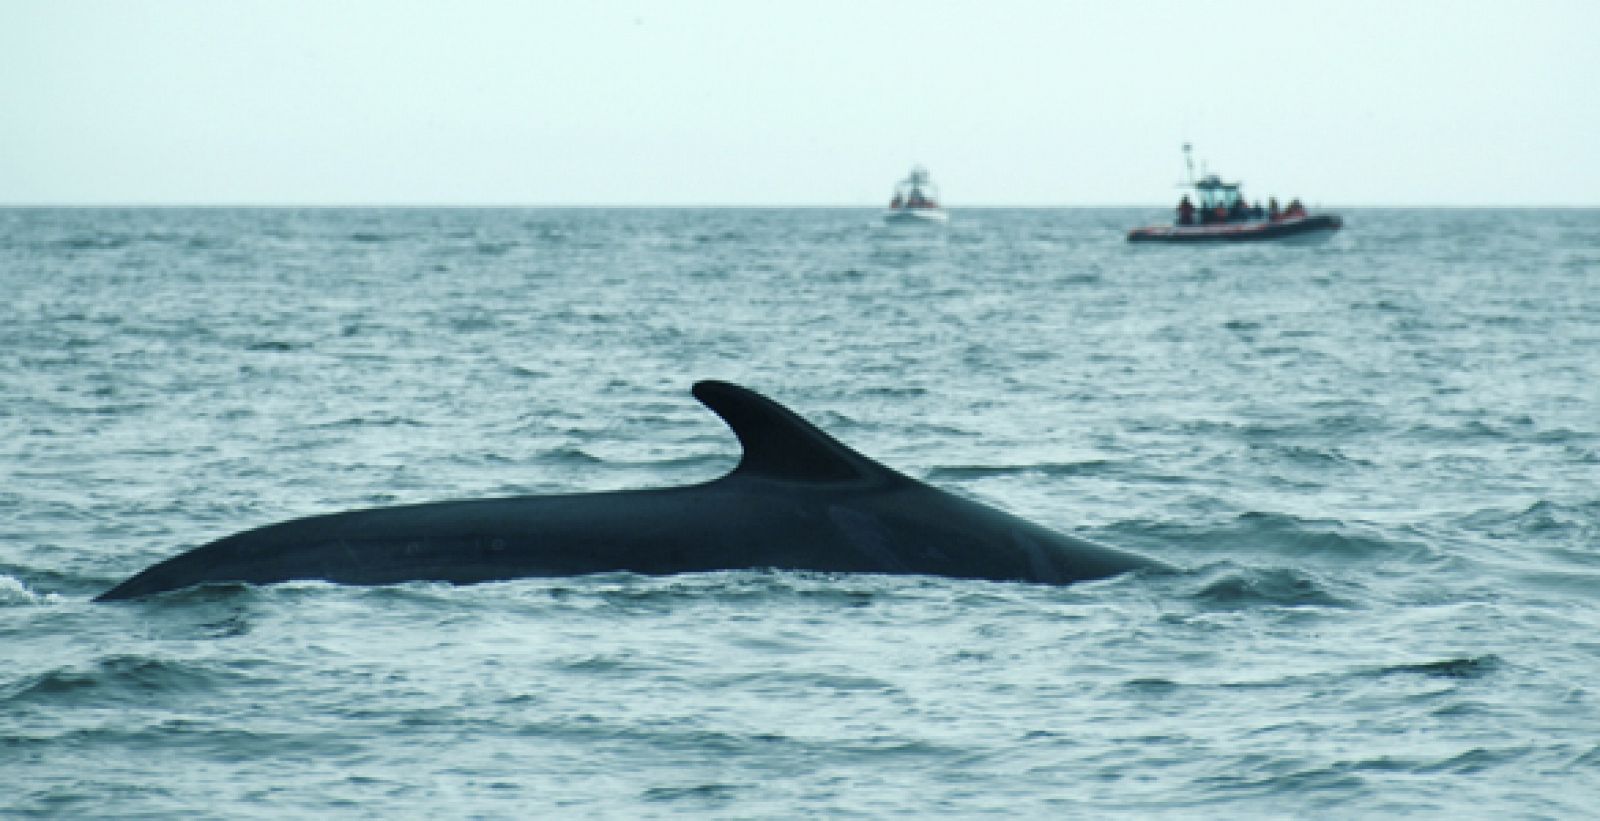 El fuerte ruido causado por el transporte maritímo y los choques con las embarcaciones amenazan gravemente a esta especie de ballena